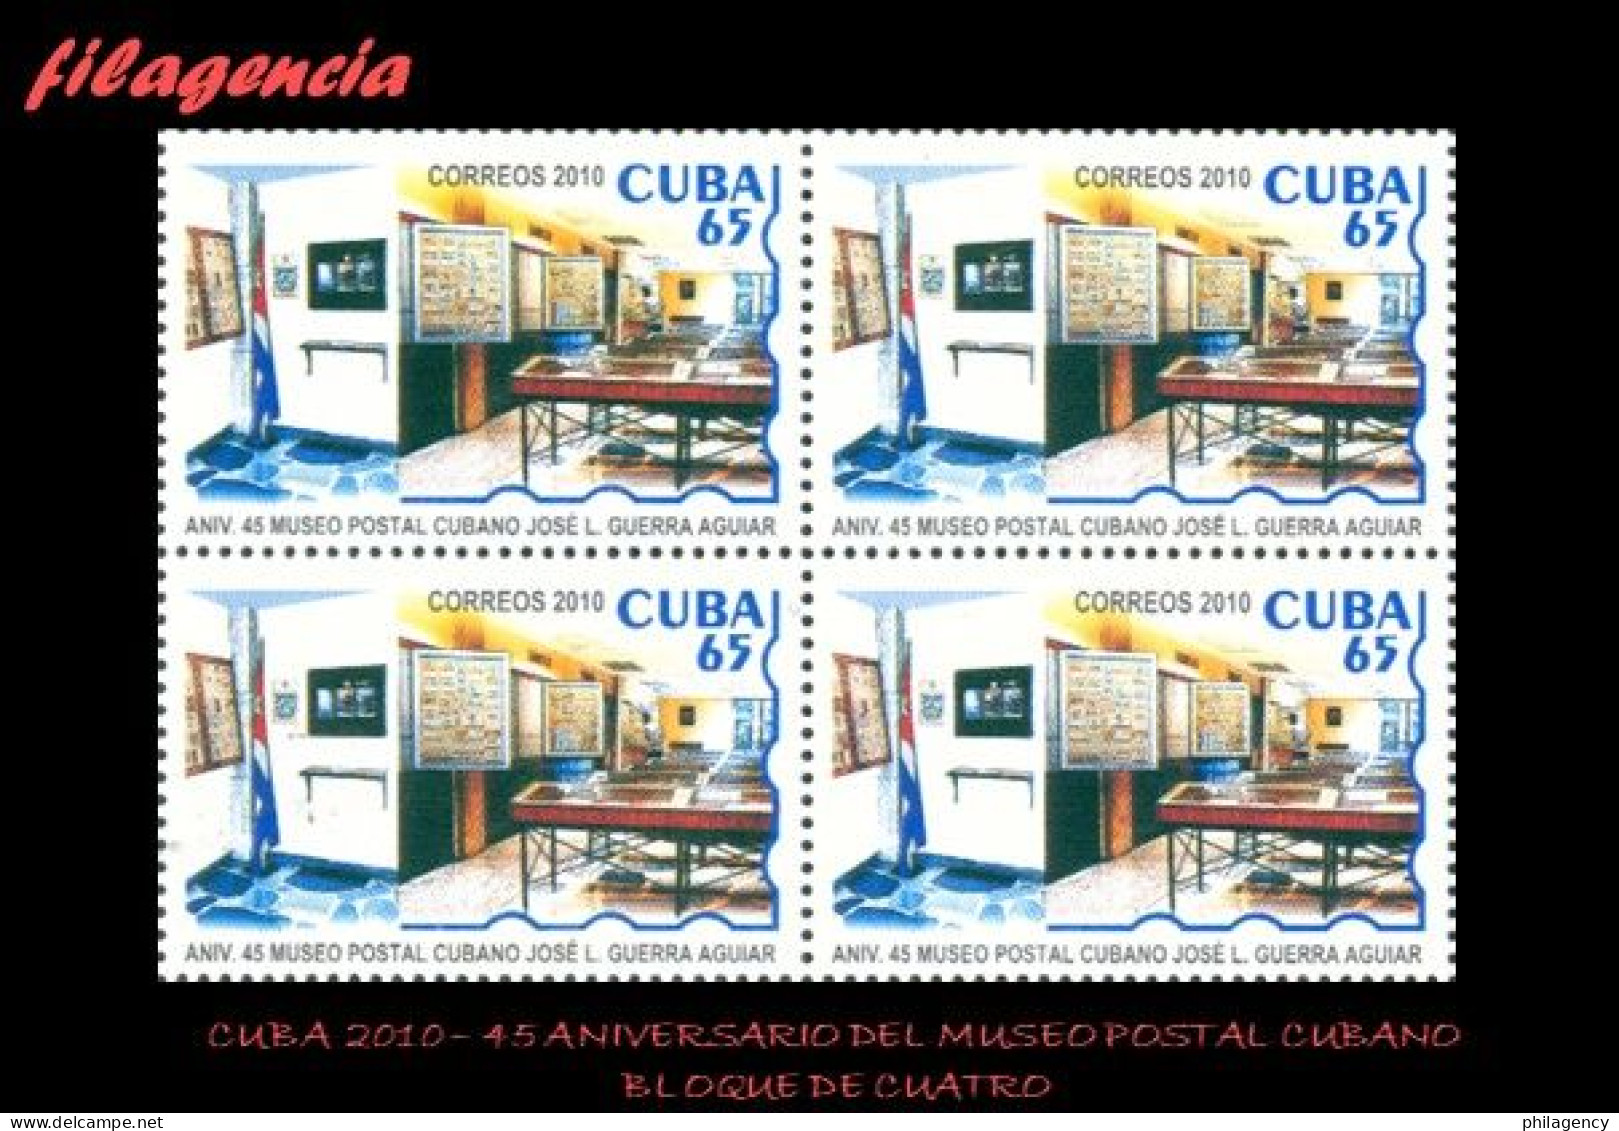 CUBA. BLOQUES DE CUATRO. 2010-01 45 ANIVERSARIO DEL MUSEO POSTAL CUBANO - Neufs